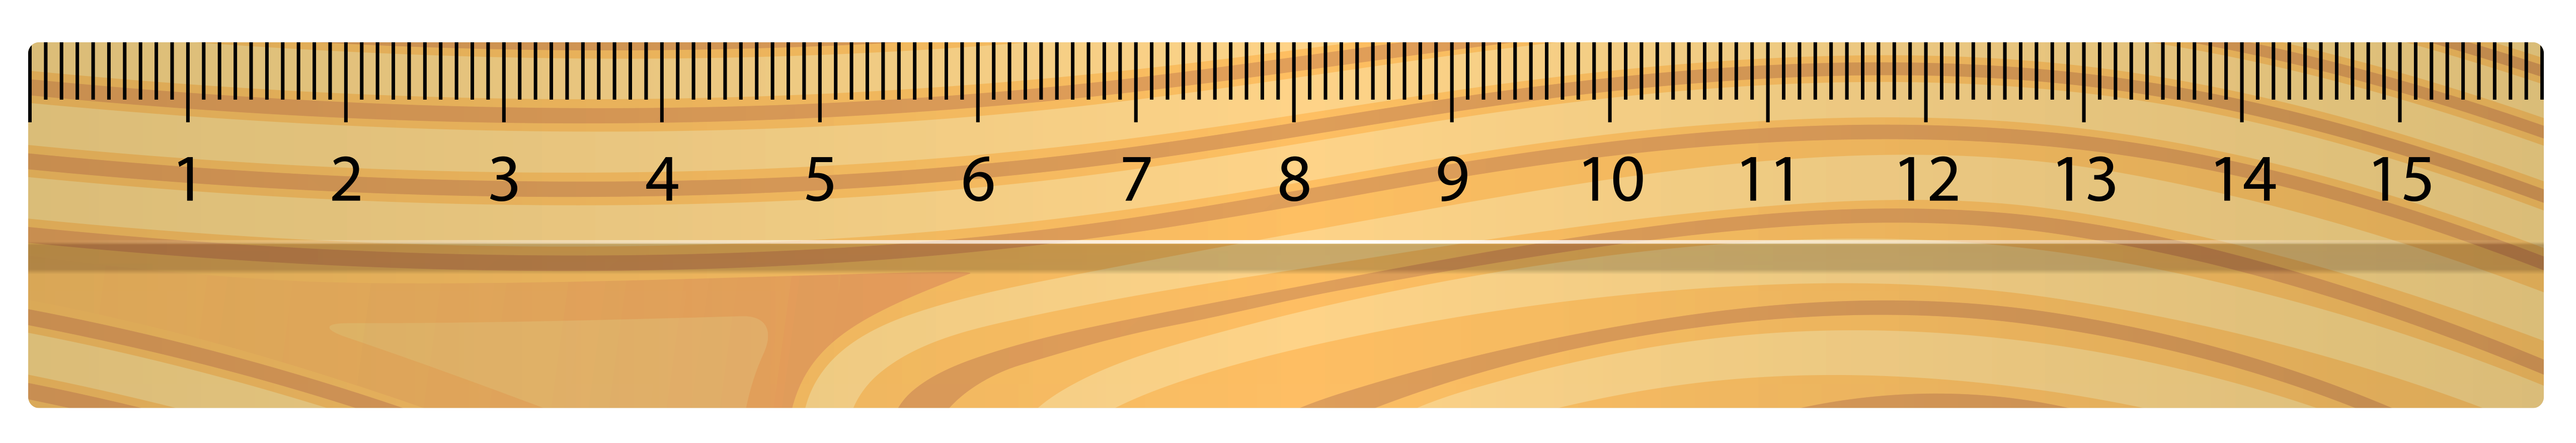 clipart ruler full size